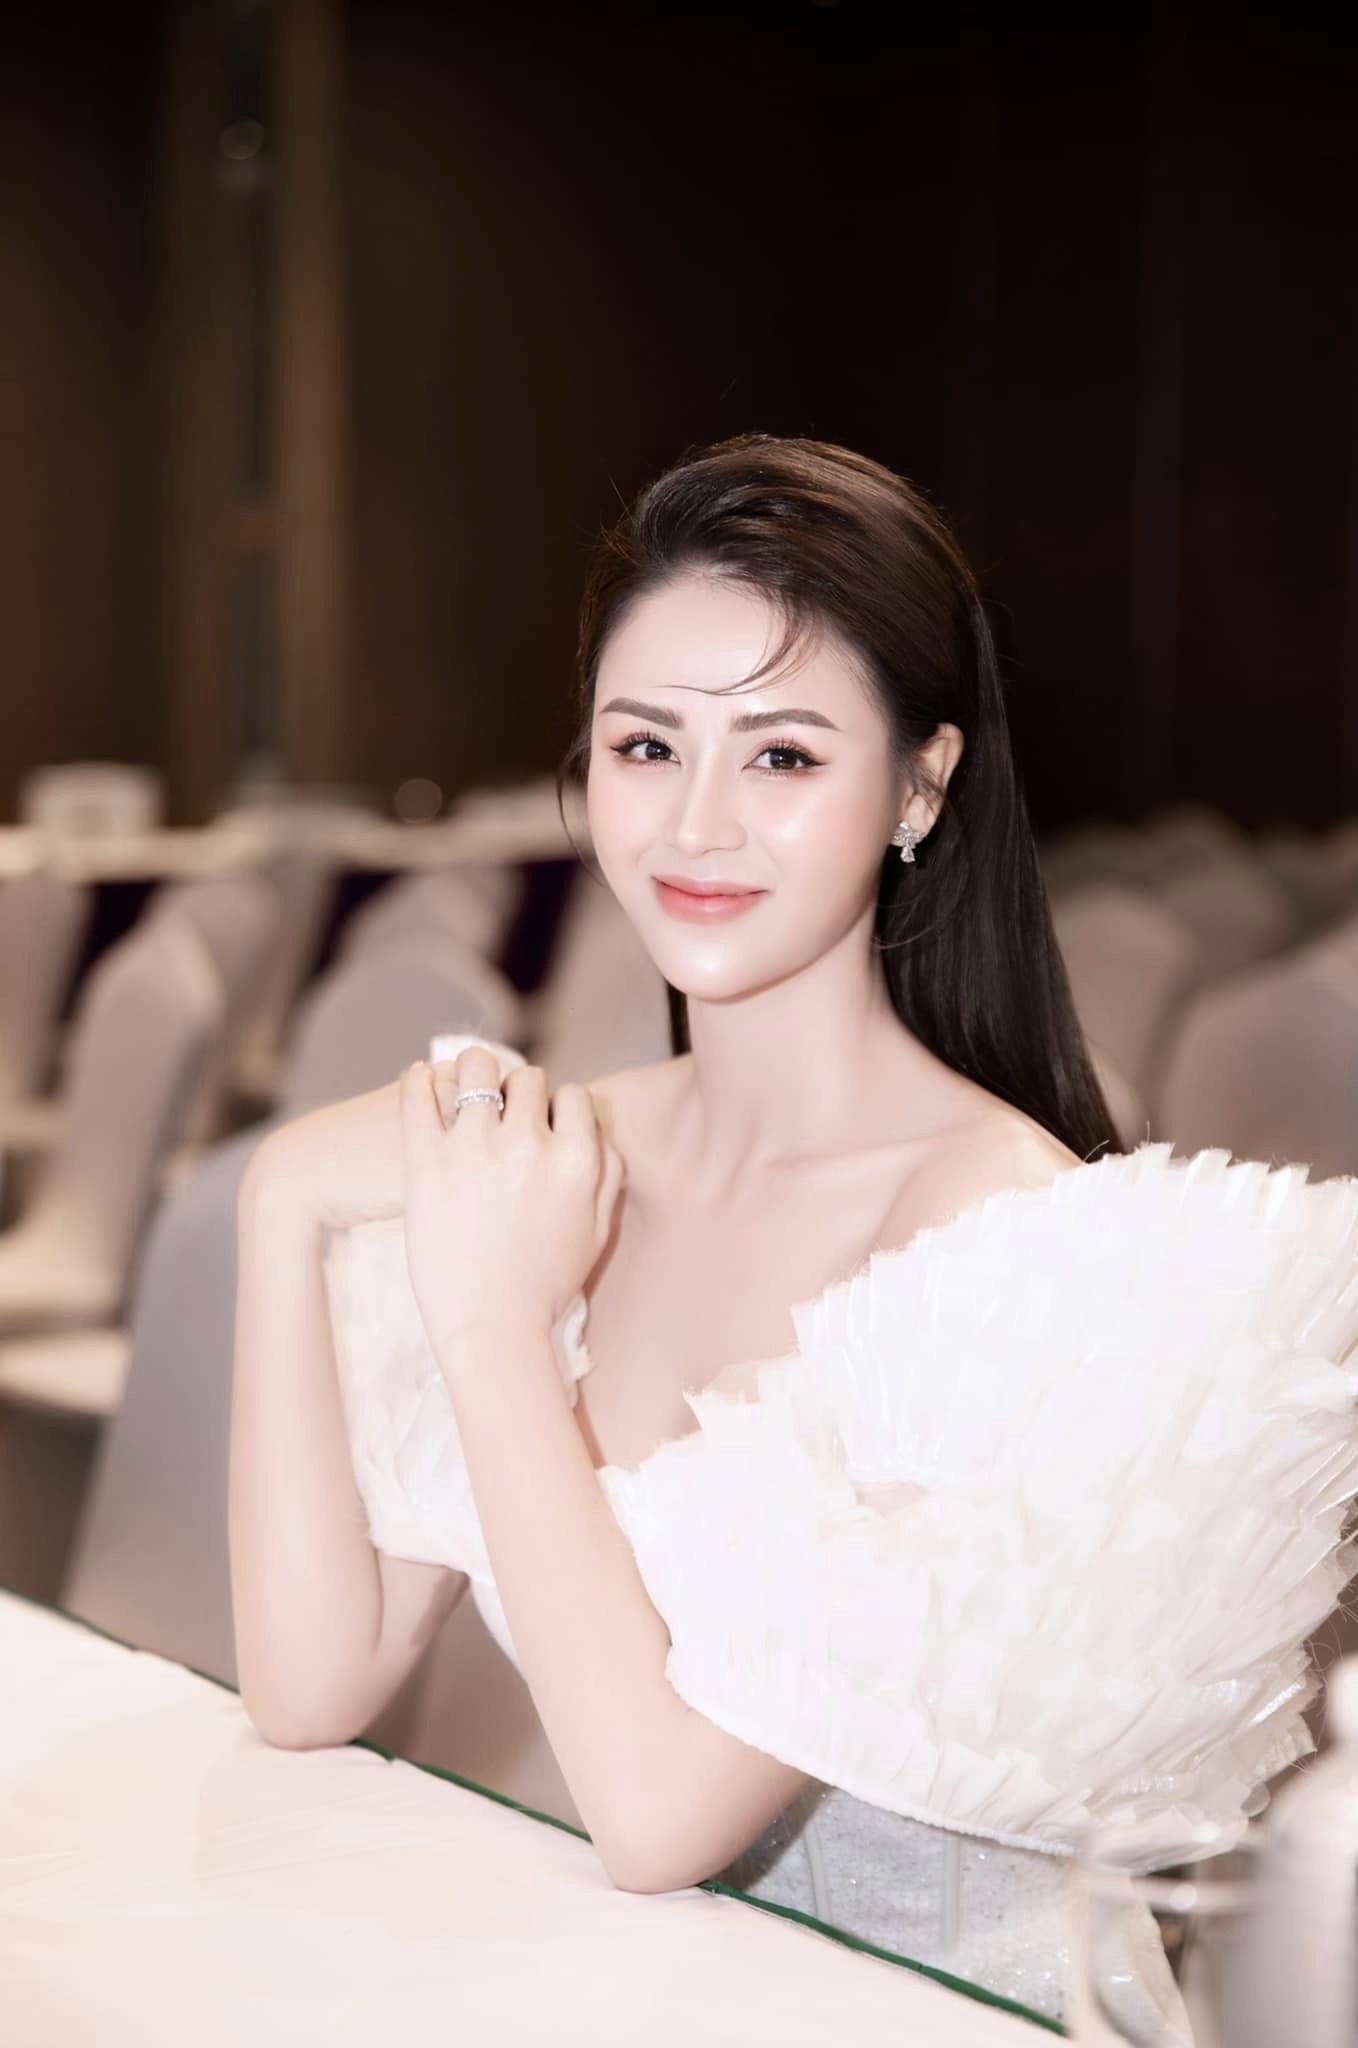 Có sự nghiệp, nhan sắc và cuộc sống đủ đầy, Lương Thu Trang đang là mẹ đơn thân hot nhất nhì VTV